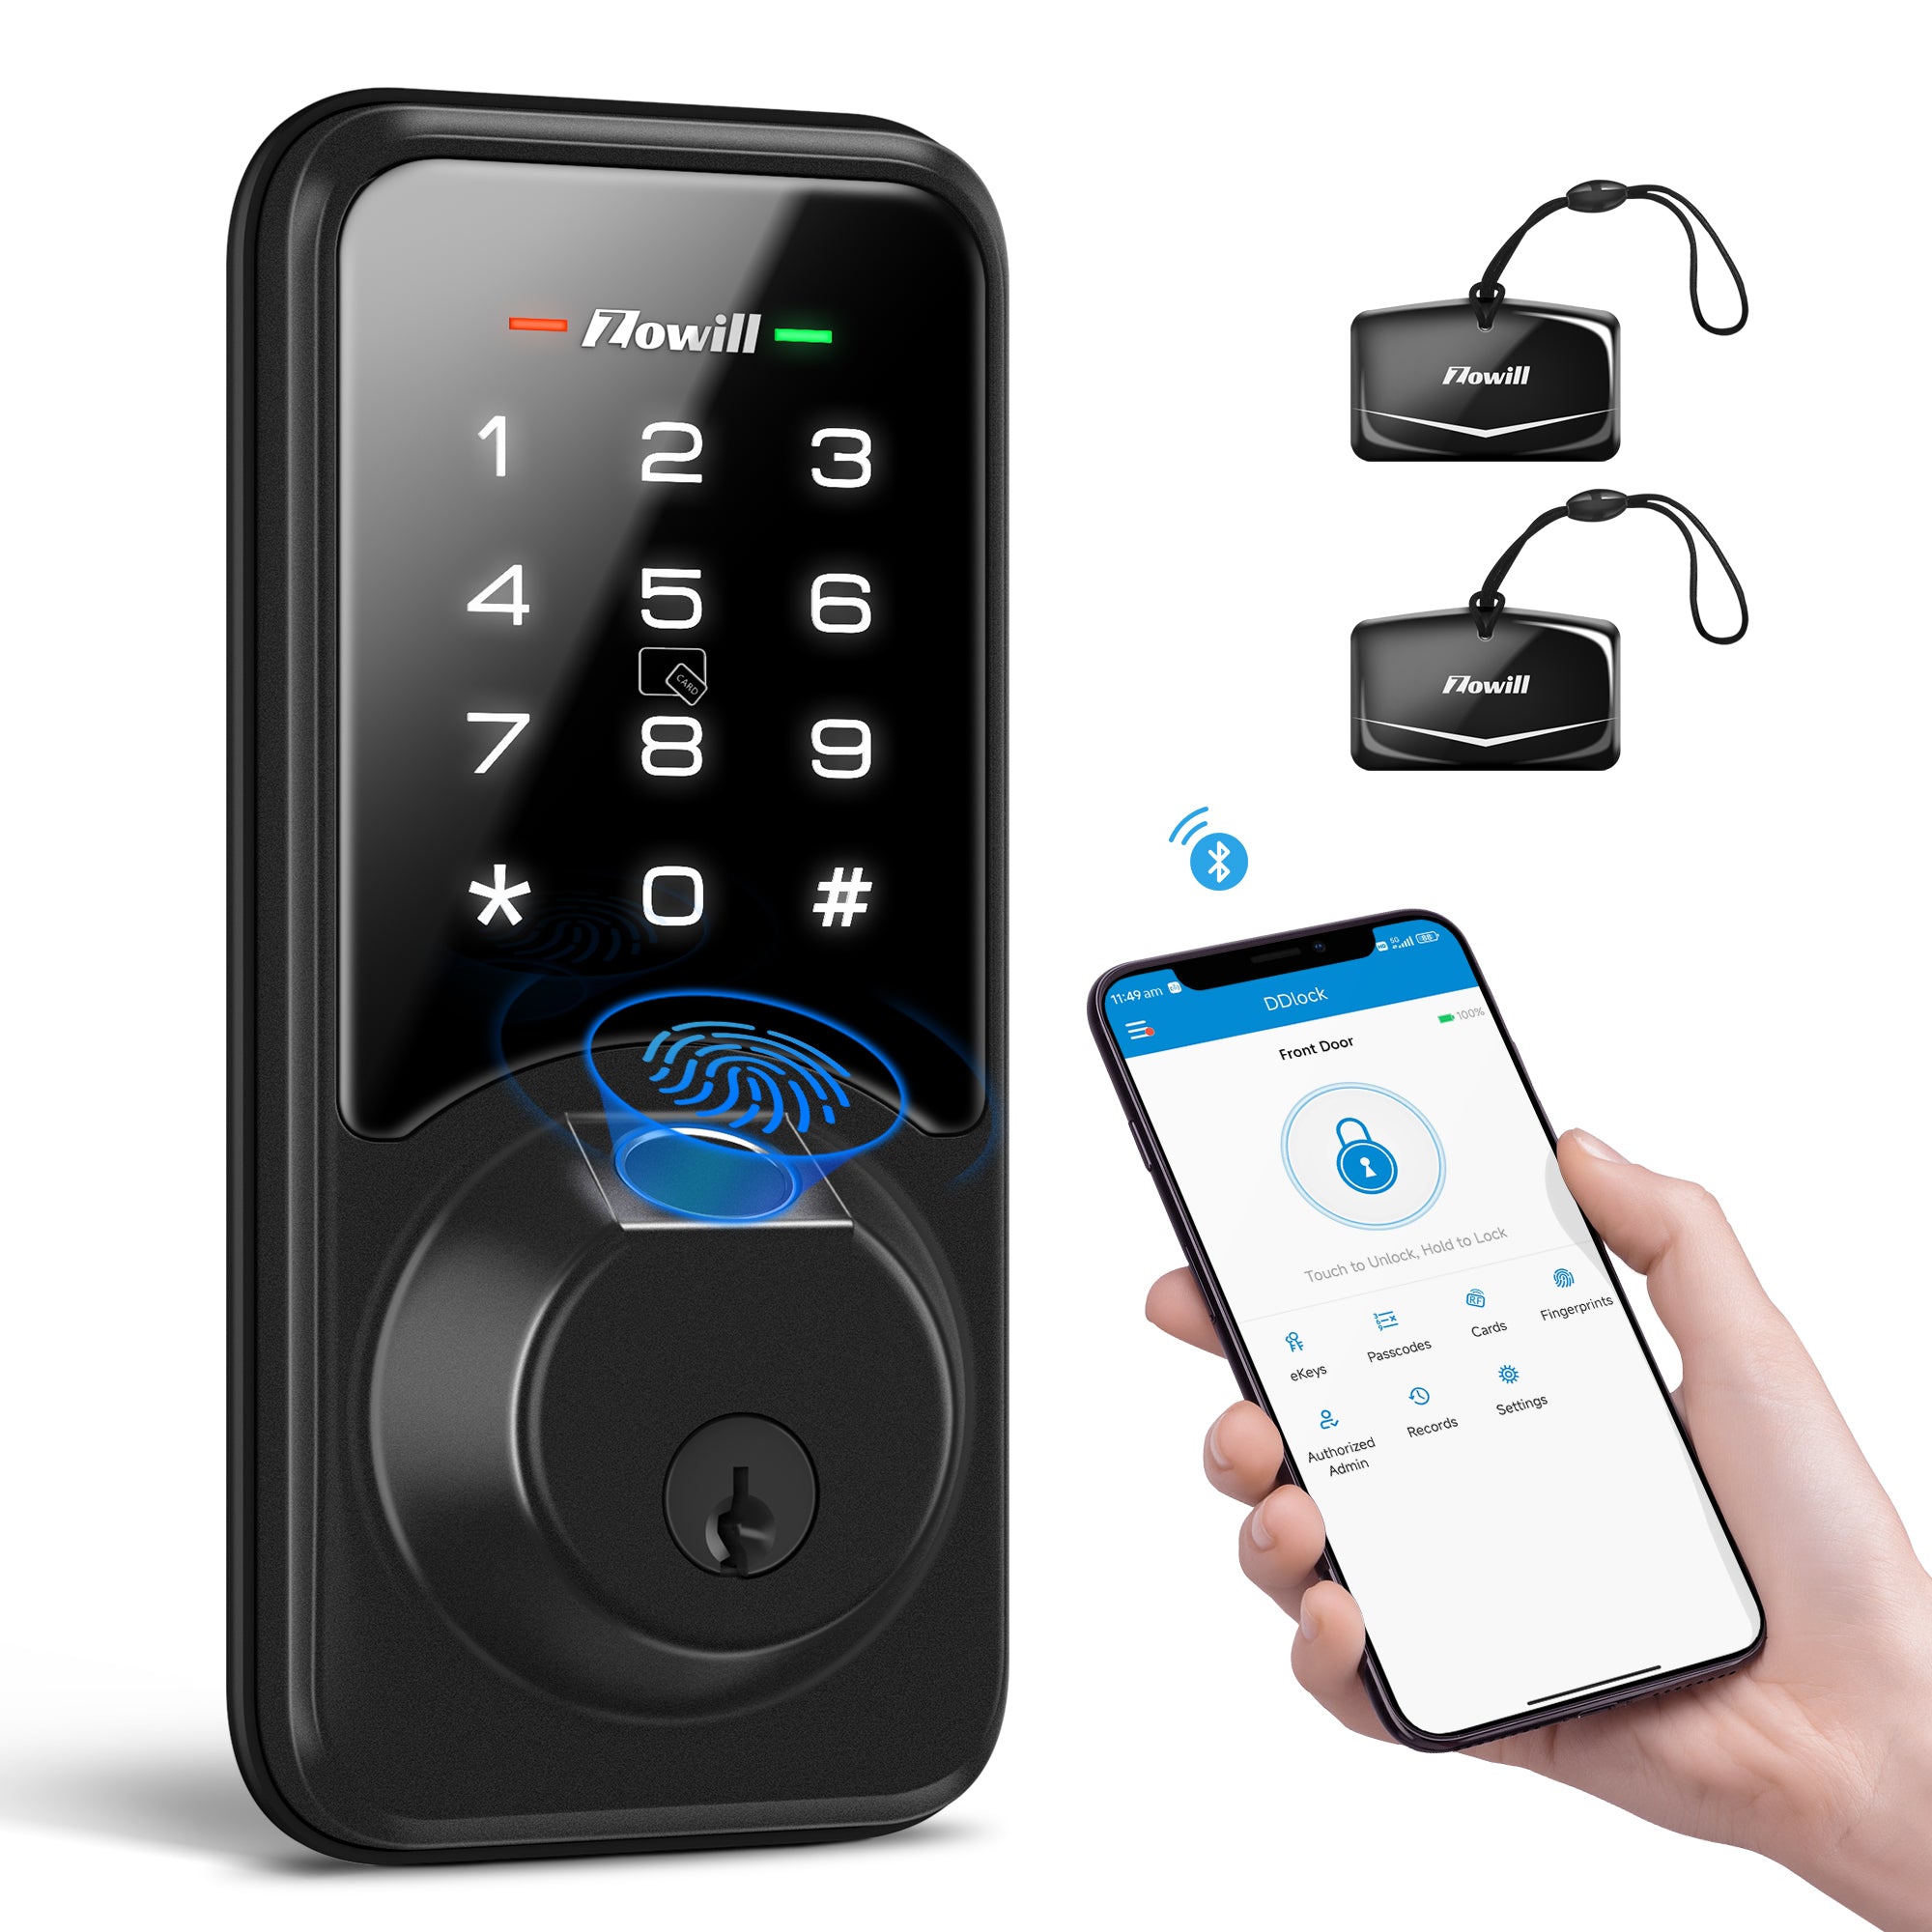 Zowill Fingerprint Door Lock with APP & Voice Control (Gateway